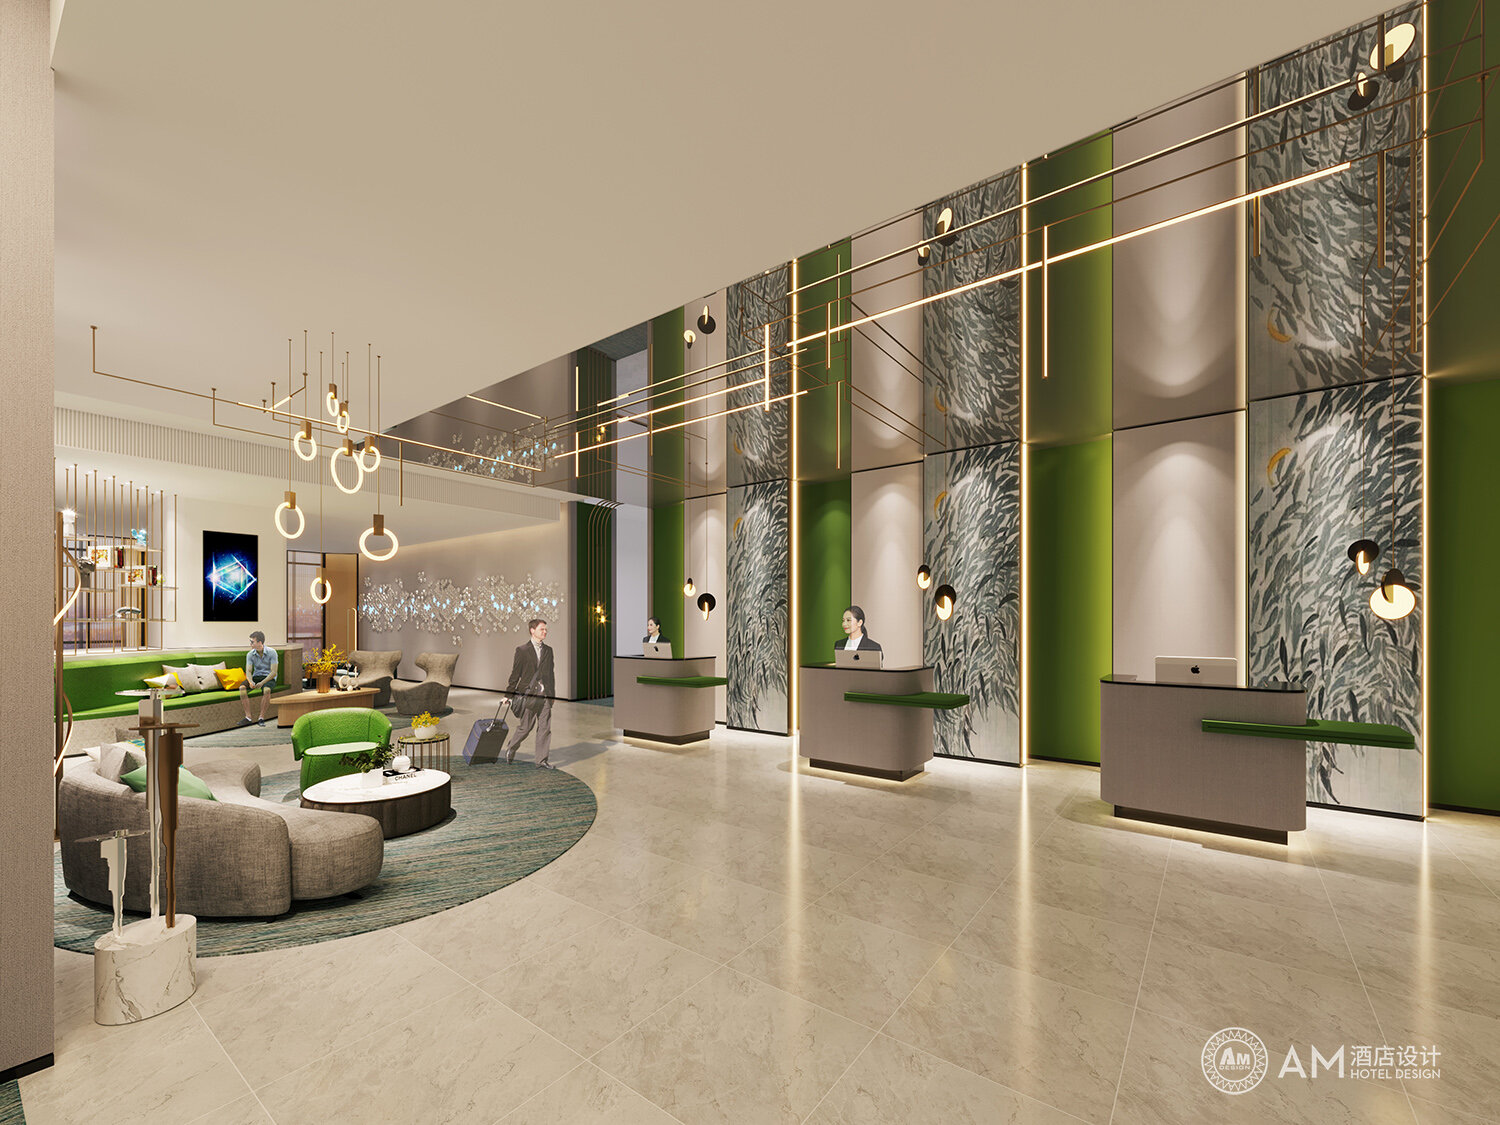 AM DESIGN | Front desk design of Weinan Hotel